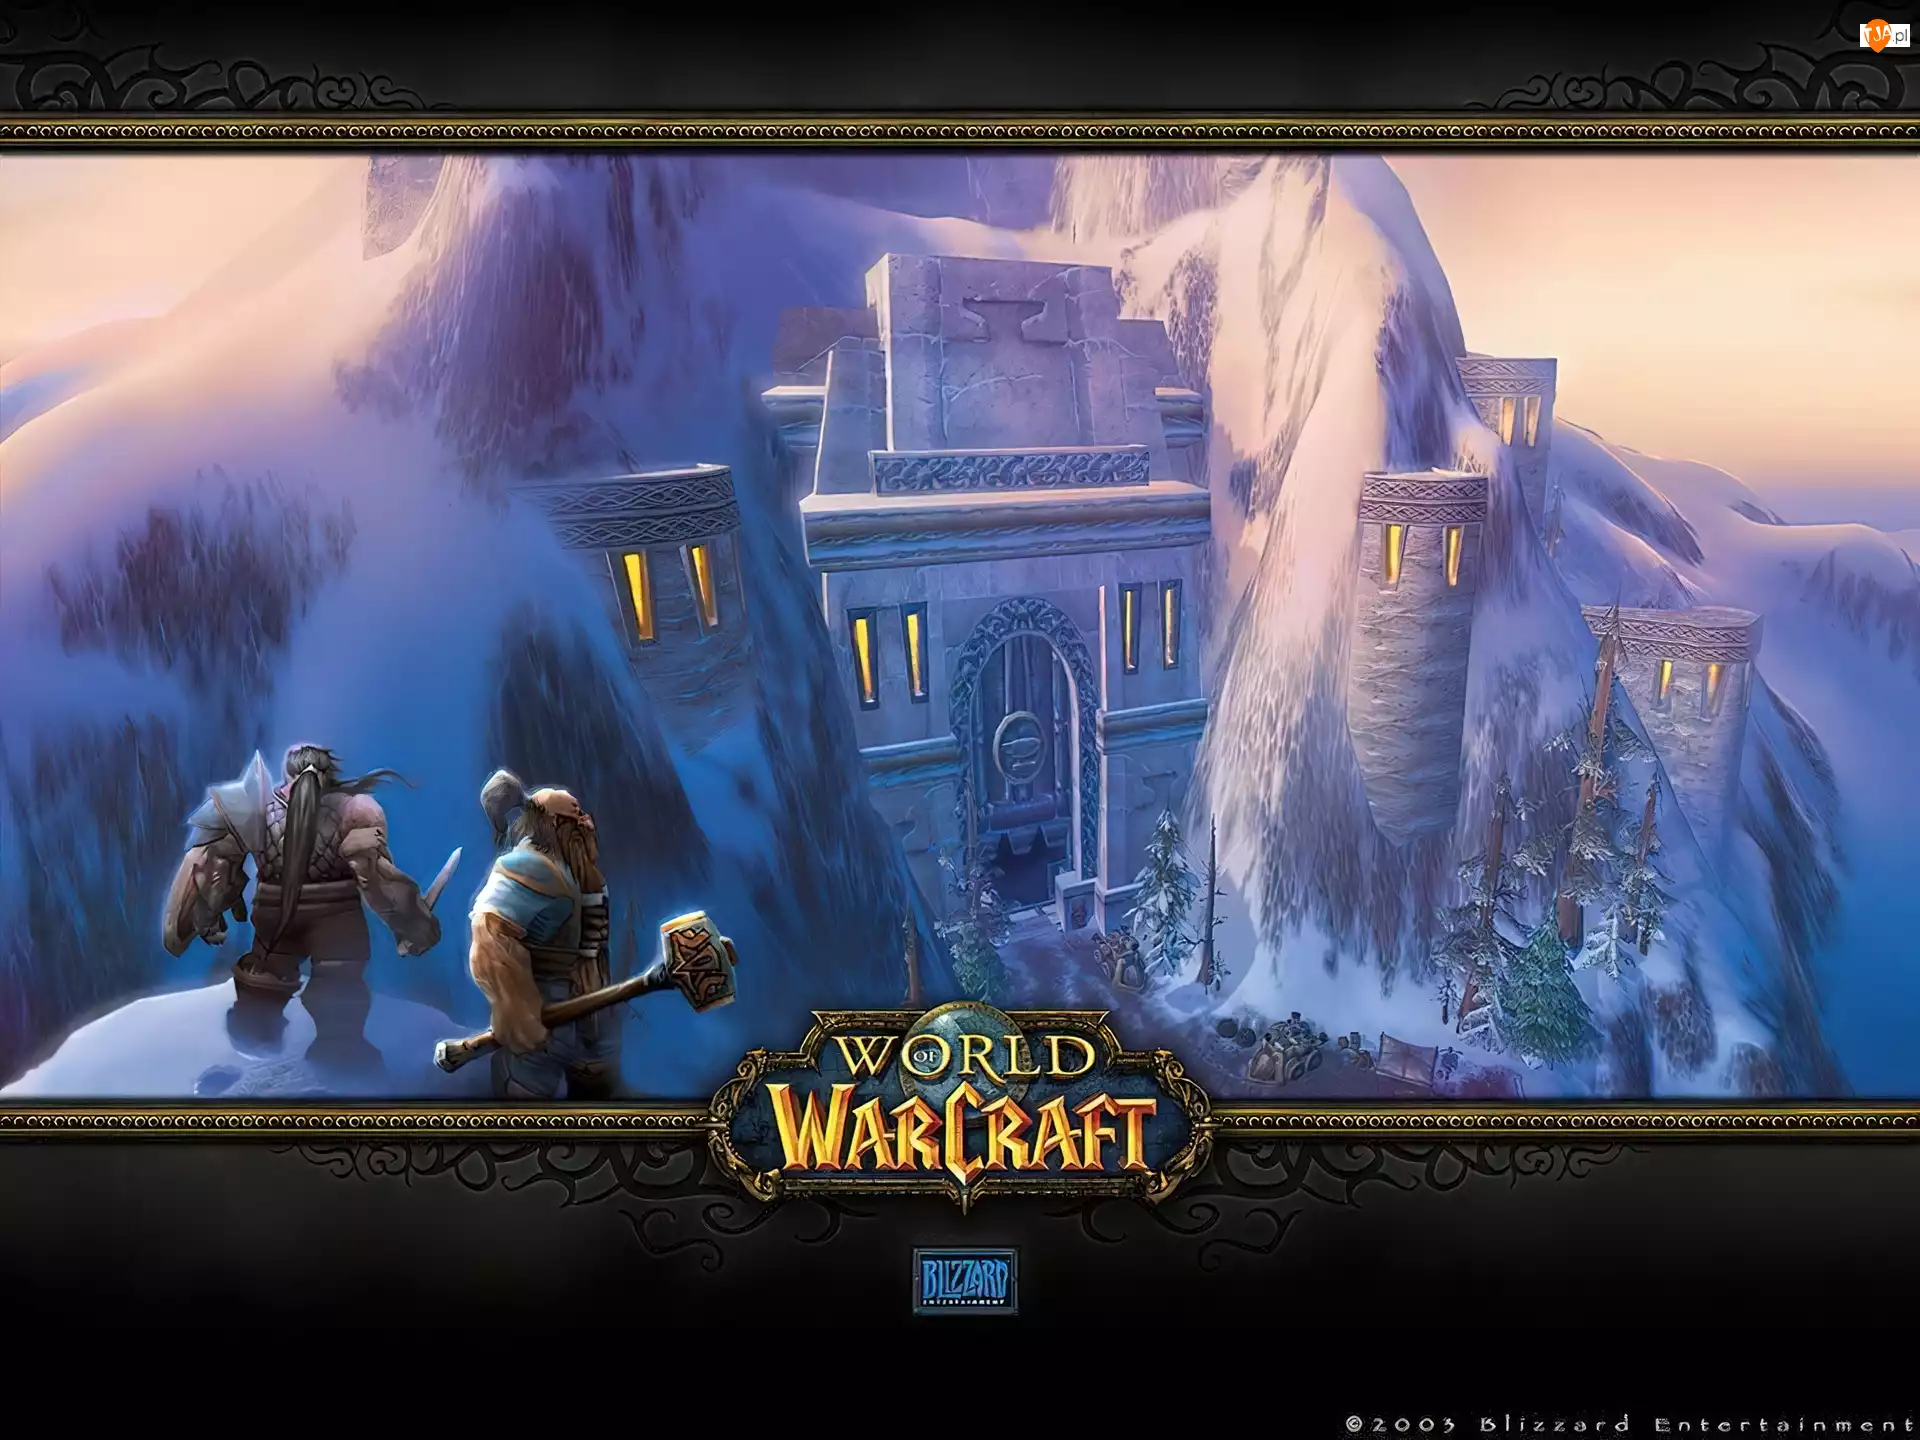 World Of Warcraft, góra, postacie, zamek, fantasy